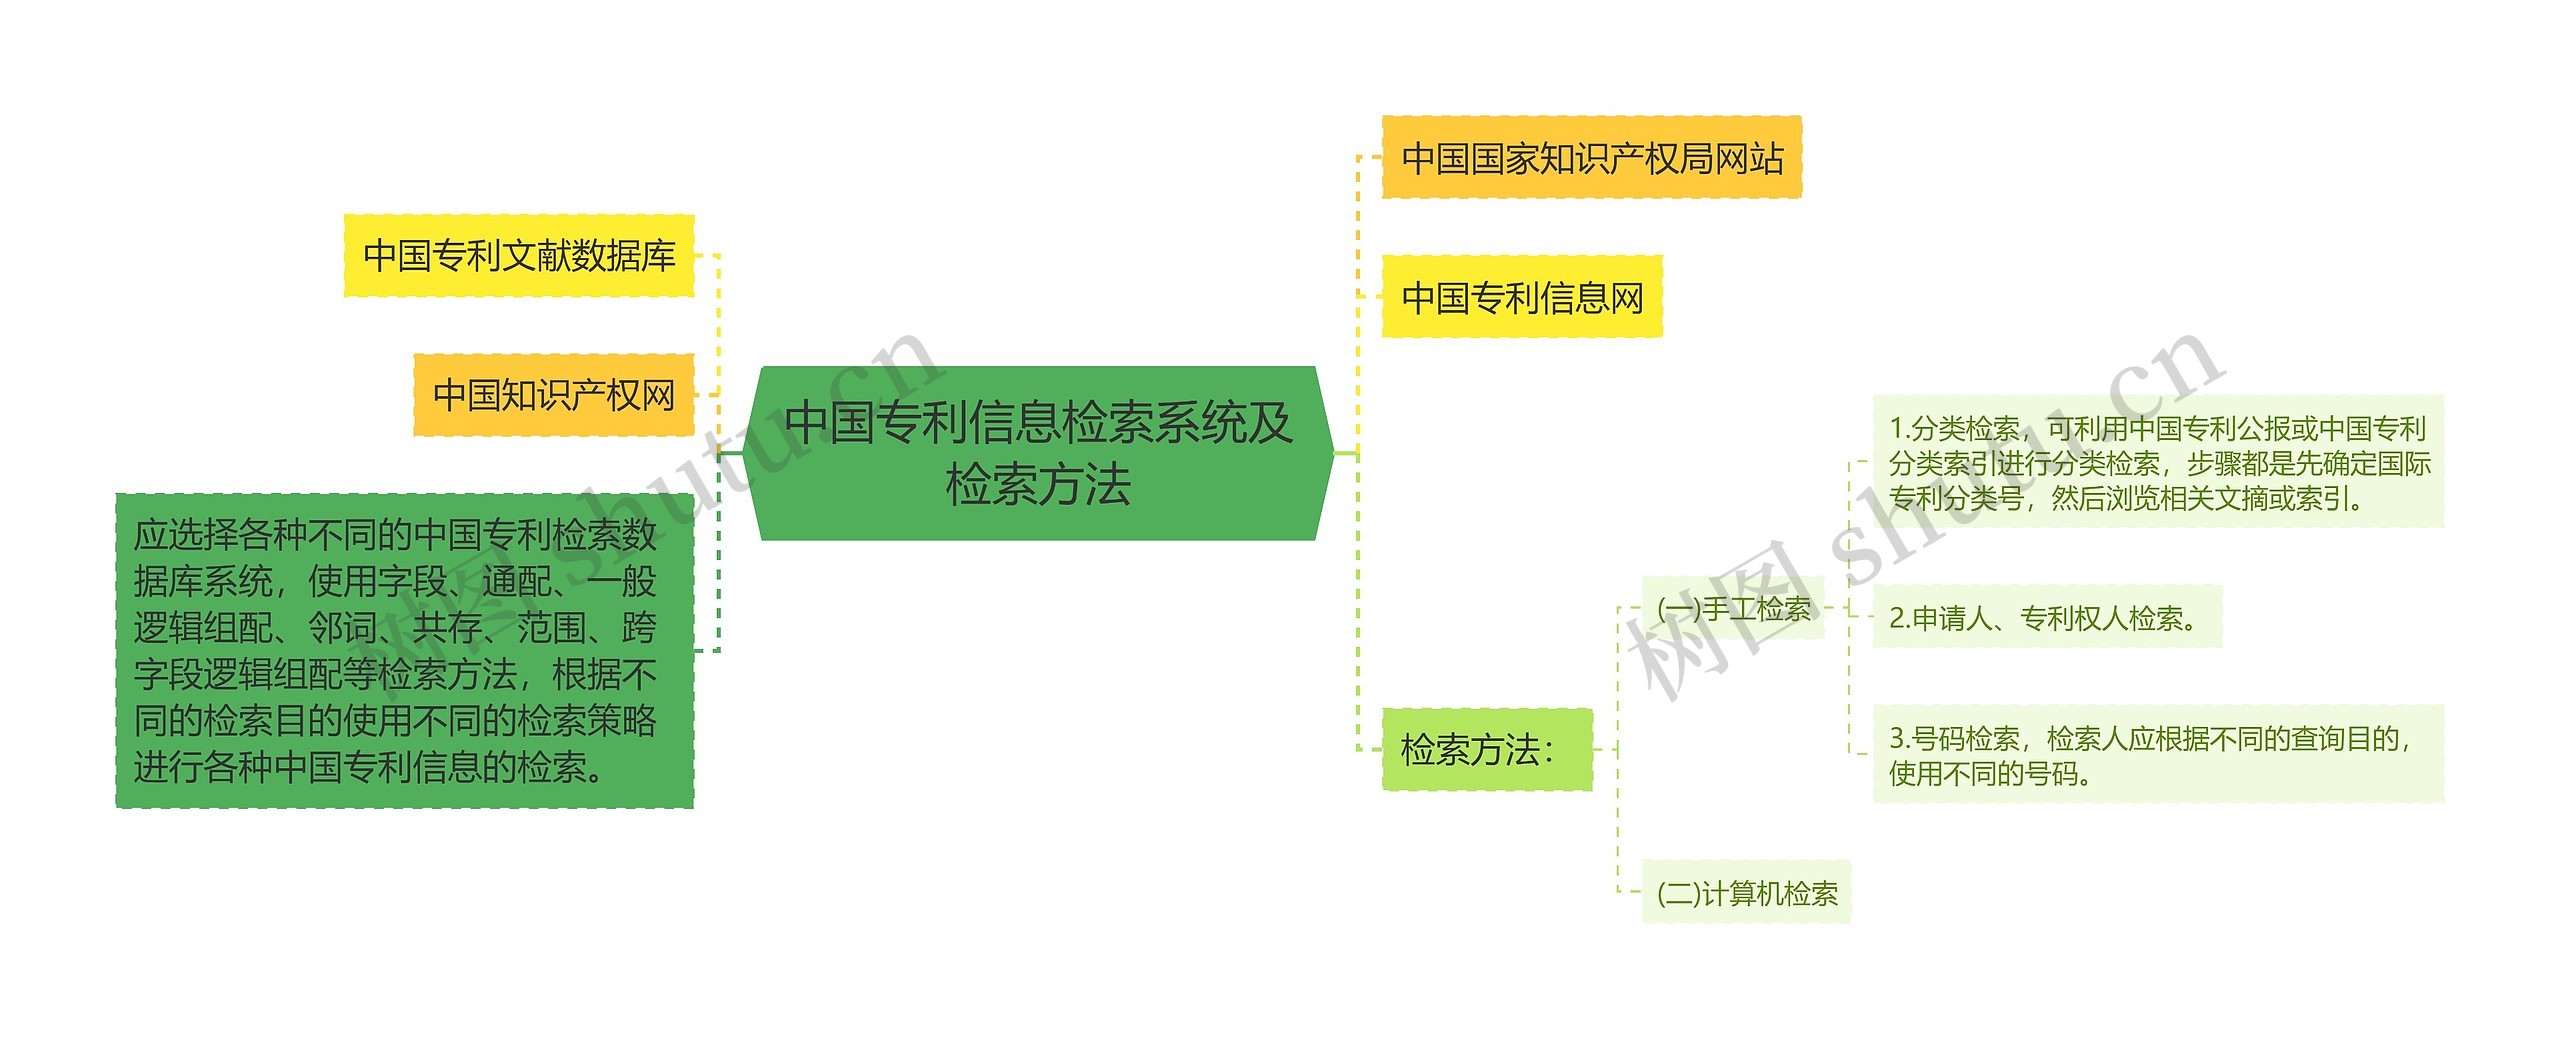 中国专利信息检索系统及检索方法